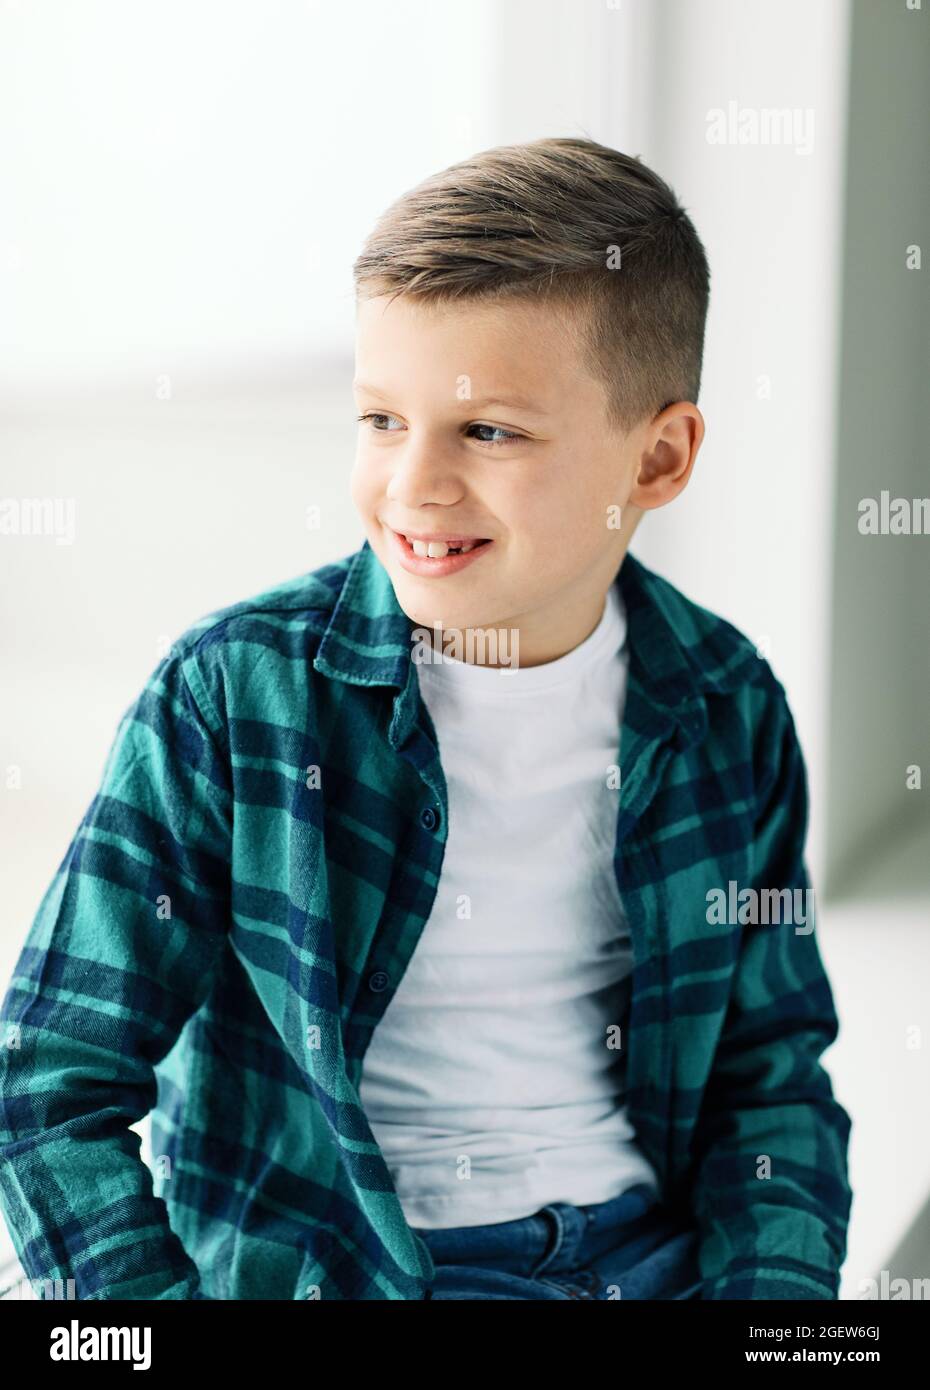 garçon portrait tête enfant enfant enfant mignon visage mâle adolescent dents Banque D'Images